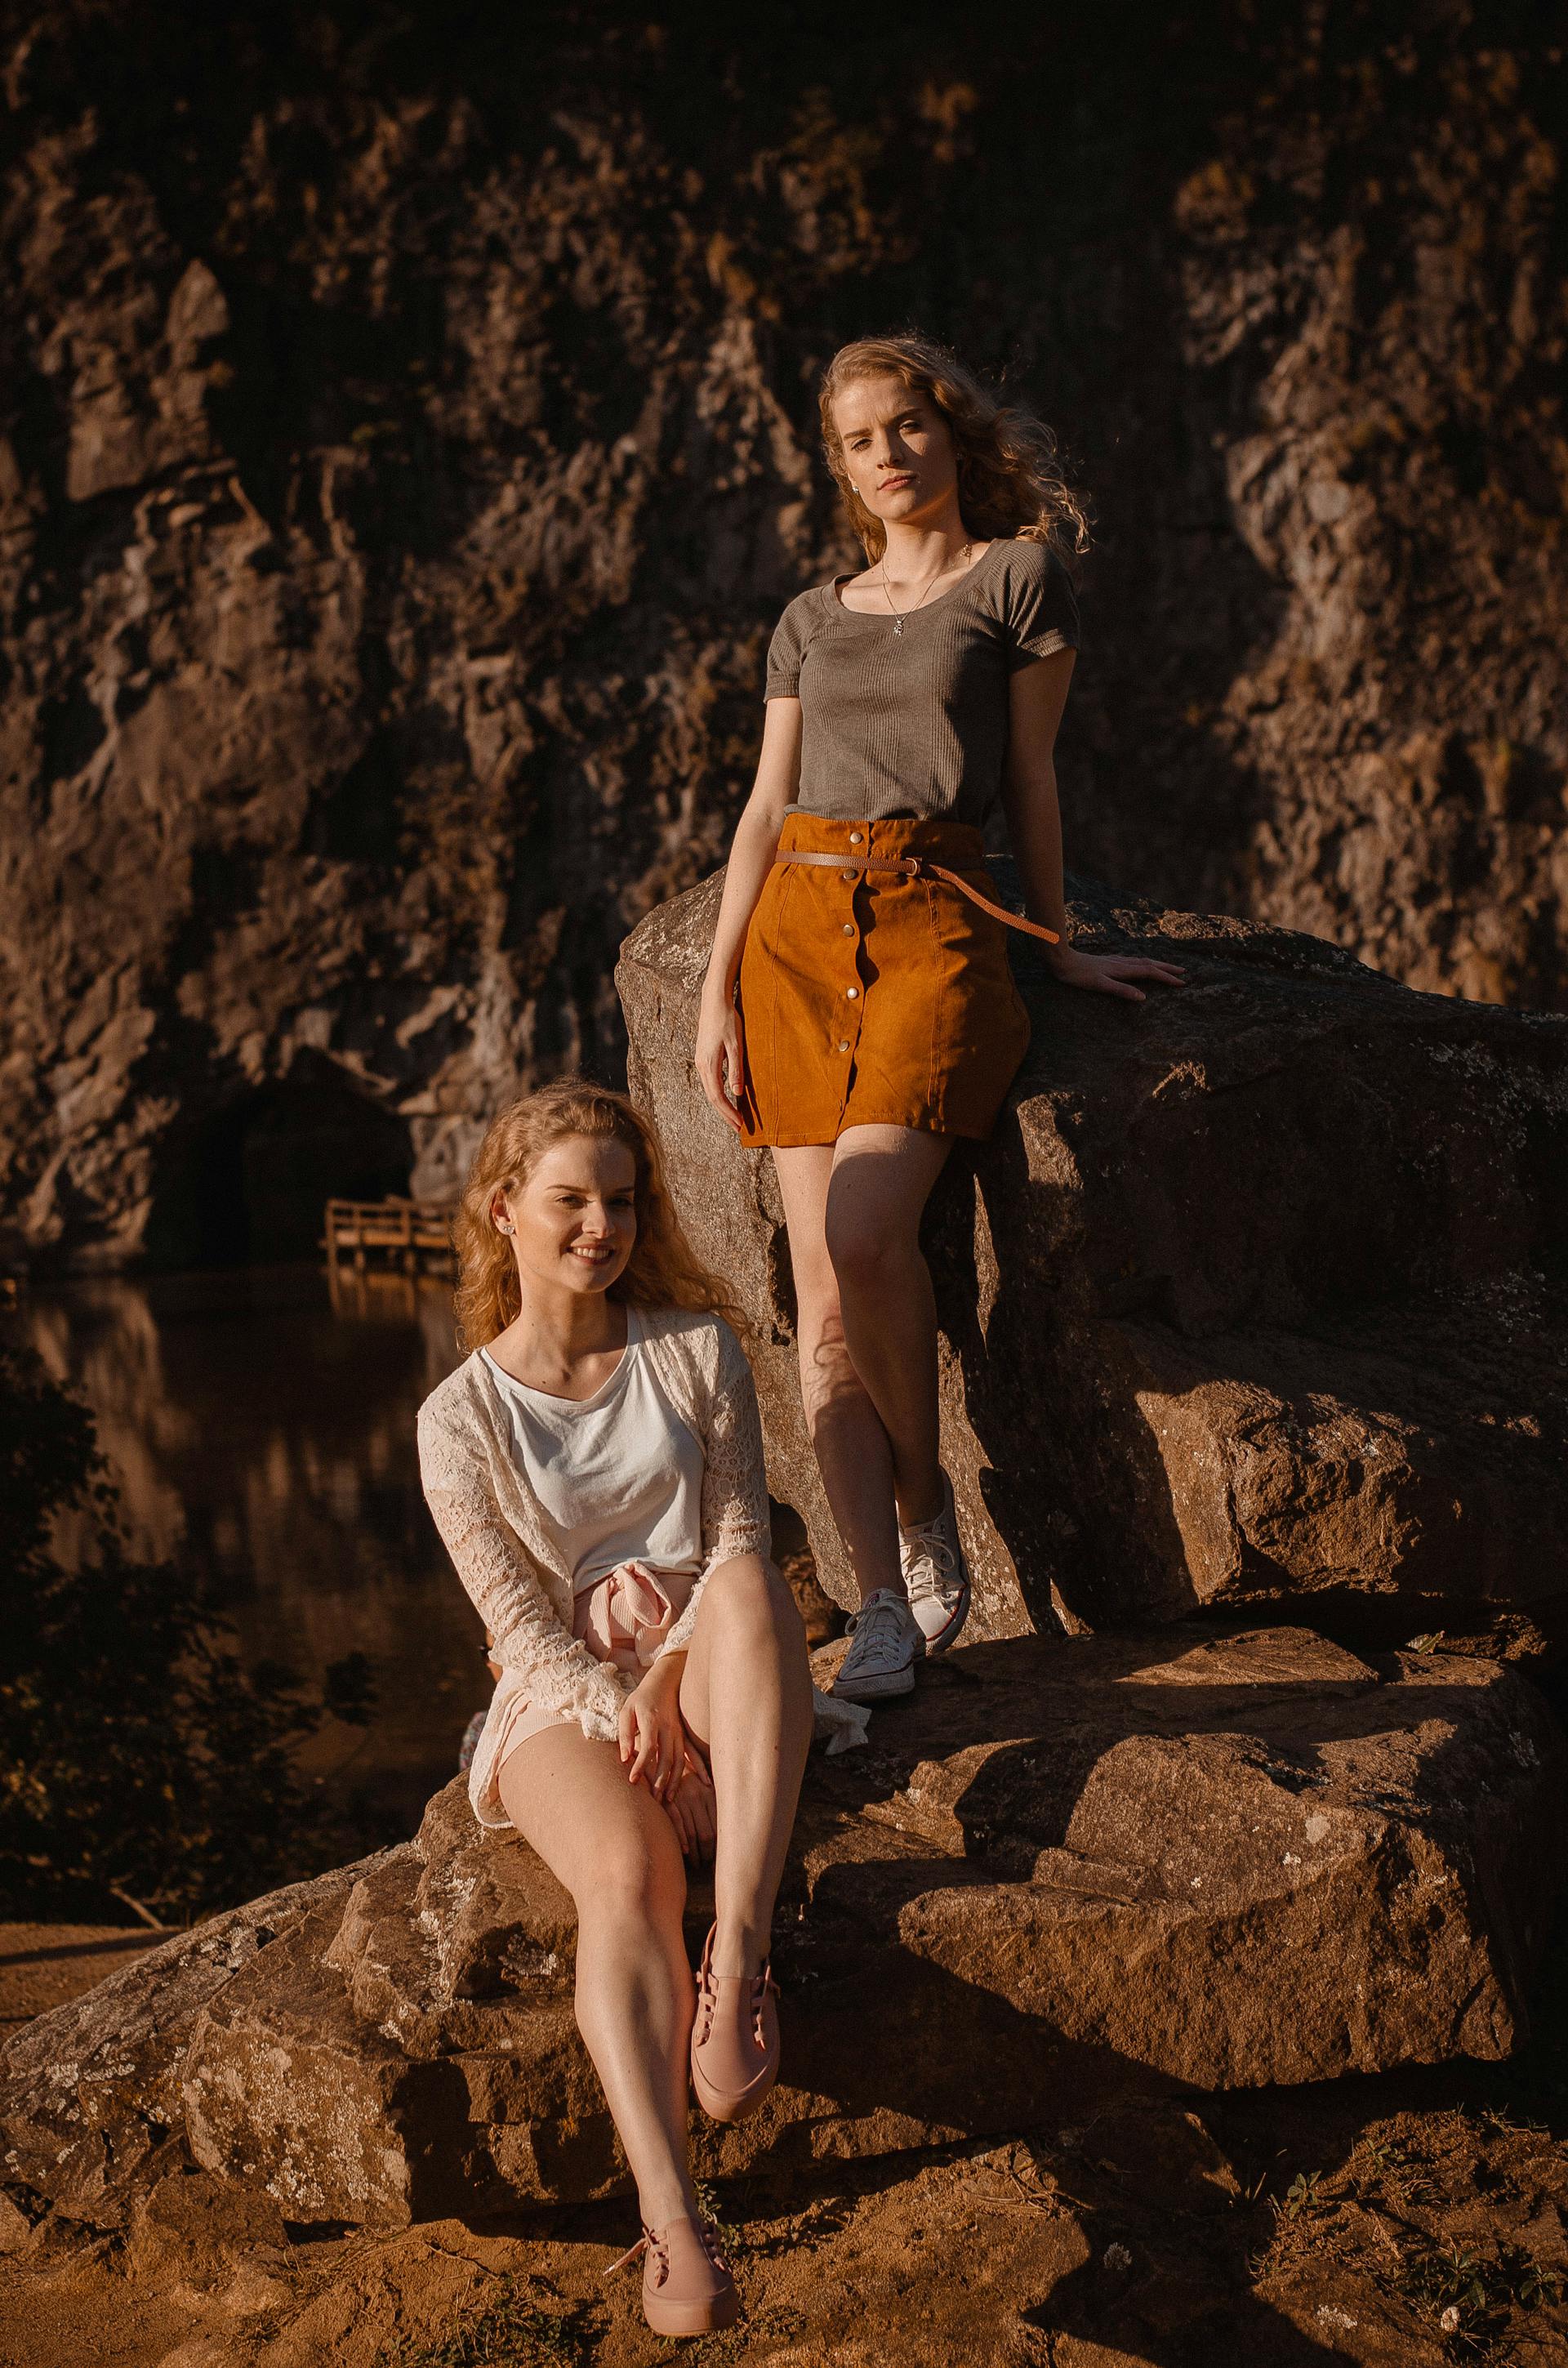 Dos mujeres posando sobre rocas | Fuente: Pexels